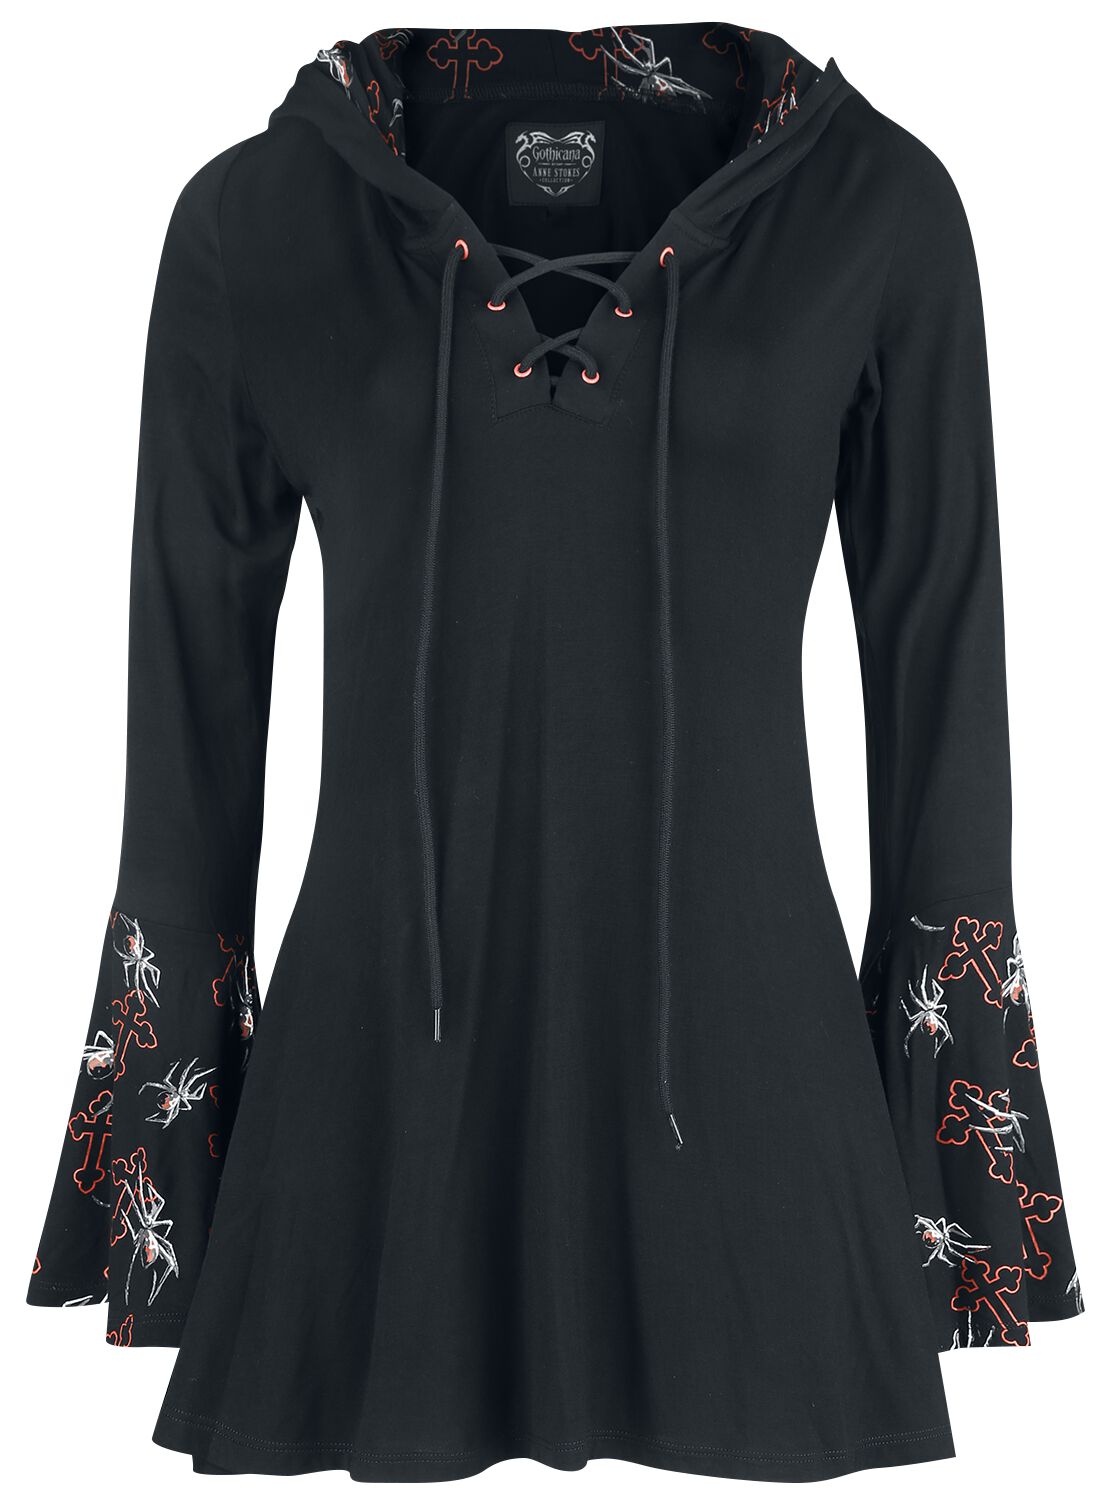 Gothicana by EMP Gothicana X Anne Stokes - Schwarzes Langarmshirt mit Schnürung, Print und großer Kapuze Langarmshirt schwarz in XL